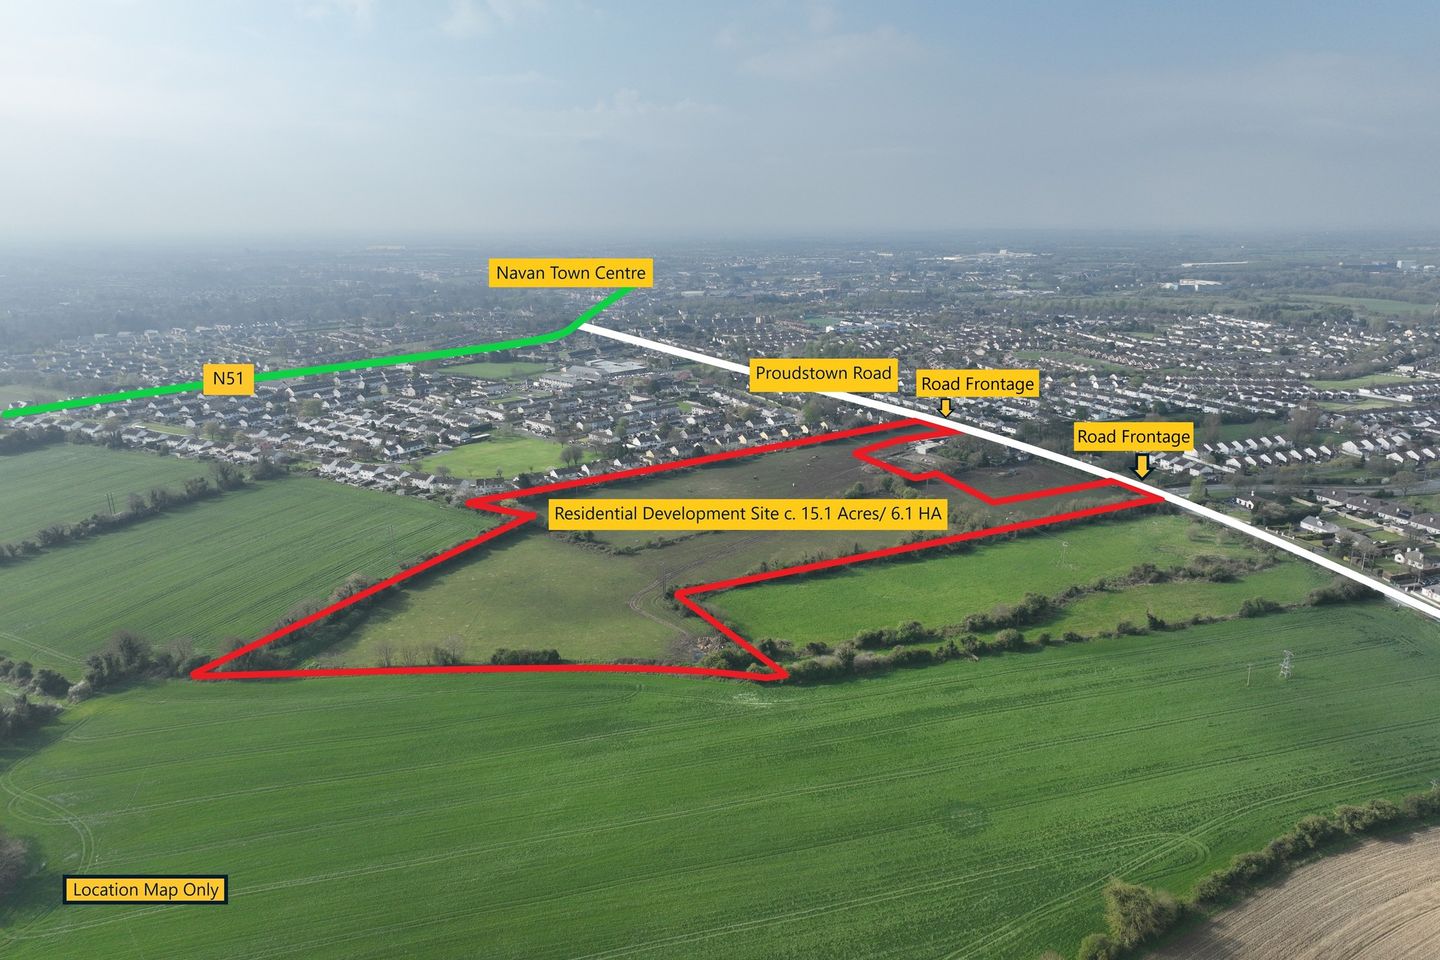 Residential Development Site on c. 15.1 Acres / 6.1 HA., Proudstown Road, Navan, Co. Meath